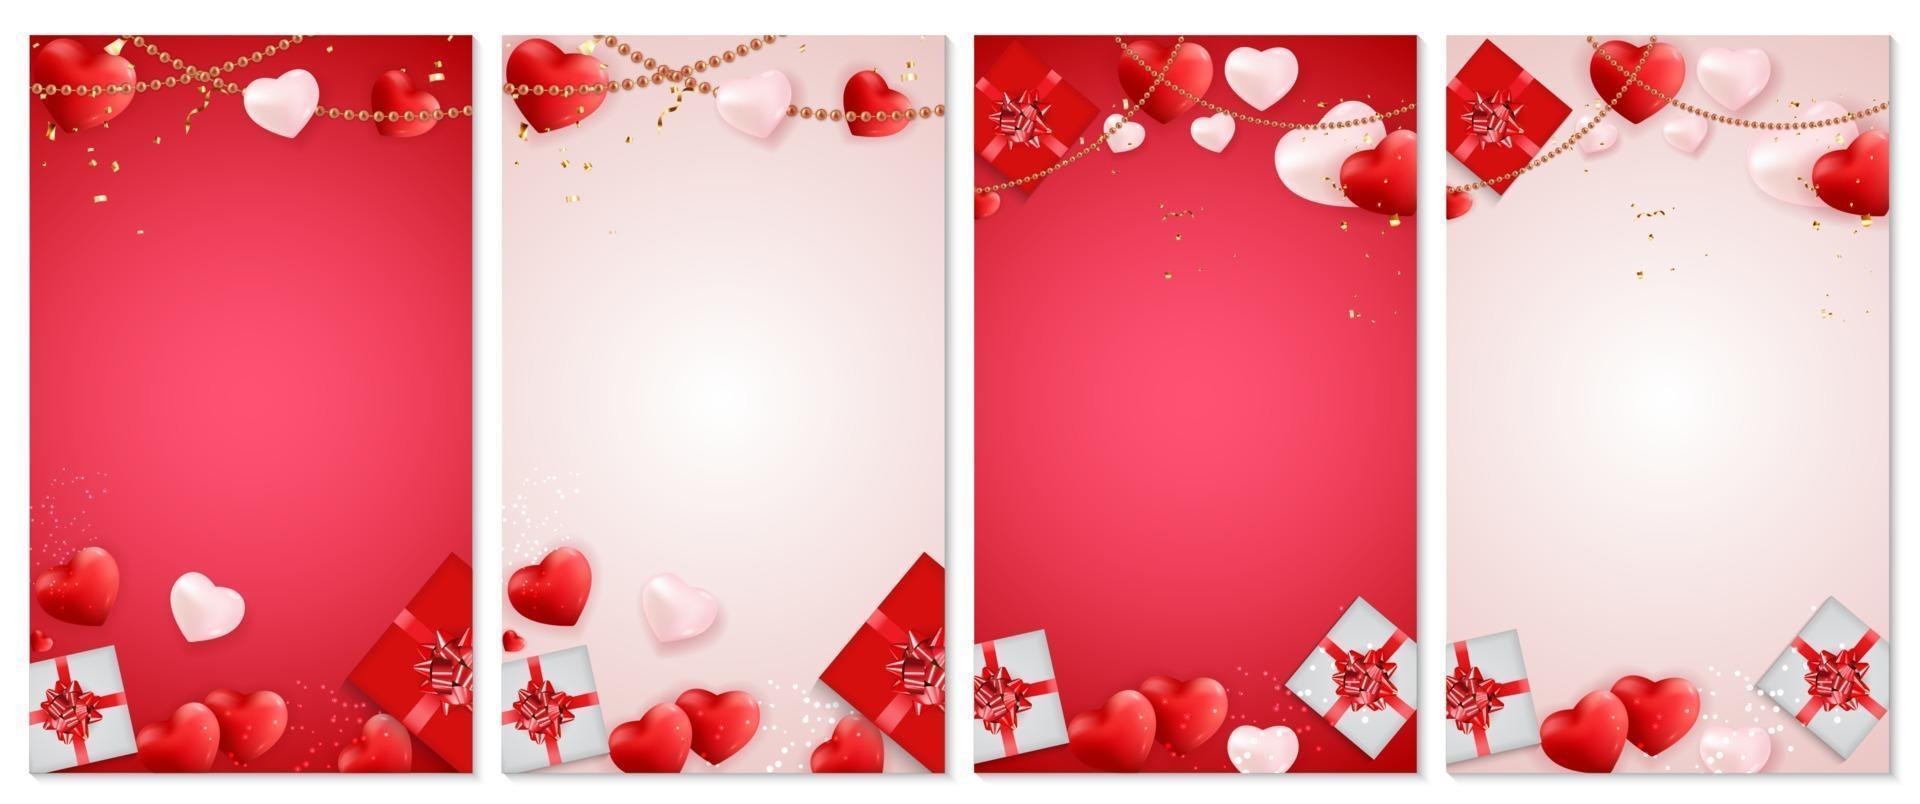 Valentijnsdag liefde en gevoelens weekend verkoop achtergrondontwerp. sjabloon voor advertenties, web-, sociale media- en modeadvertenties. vectorillustratie. eps10 vector